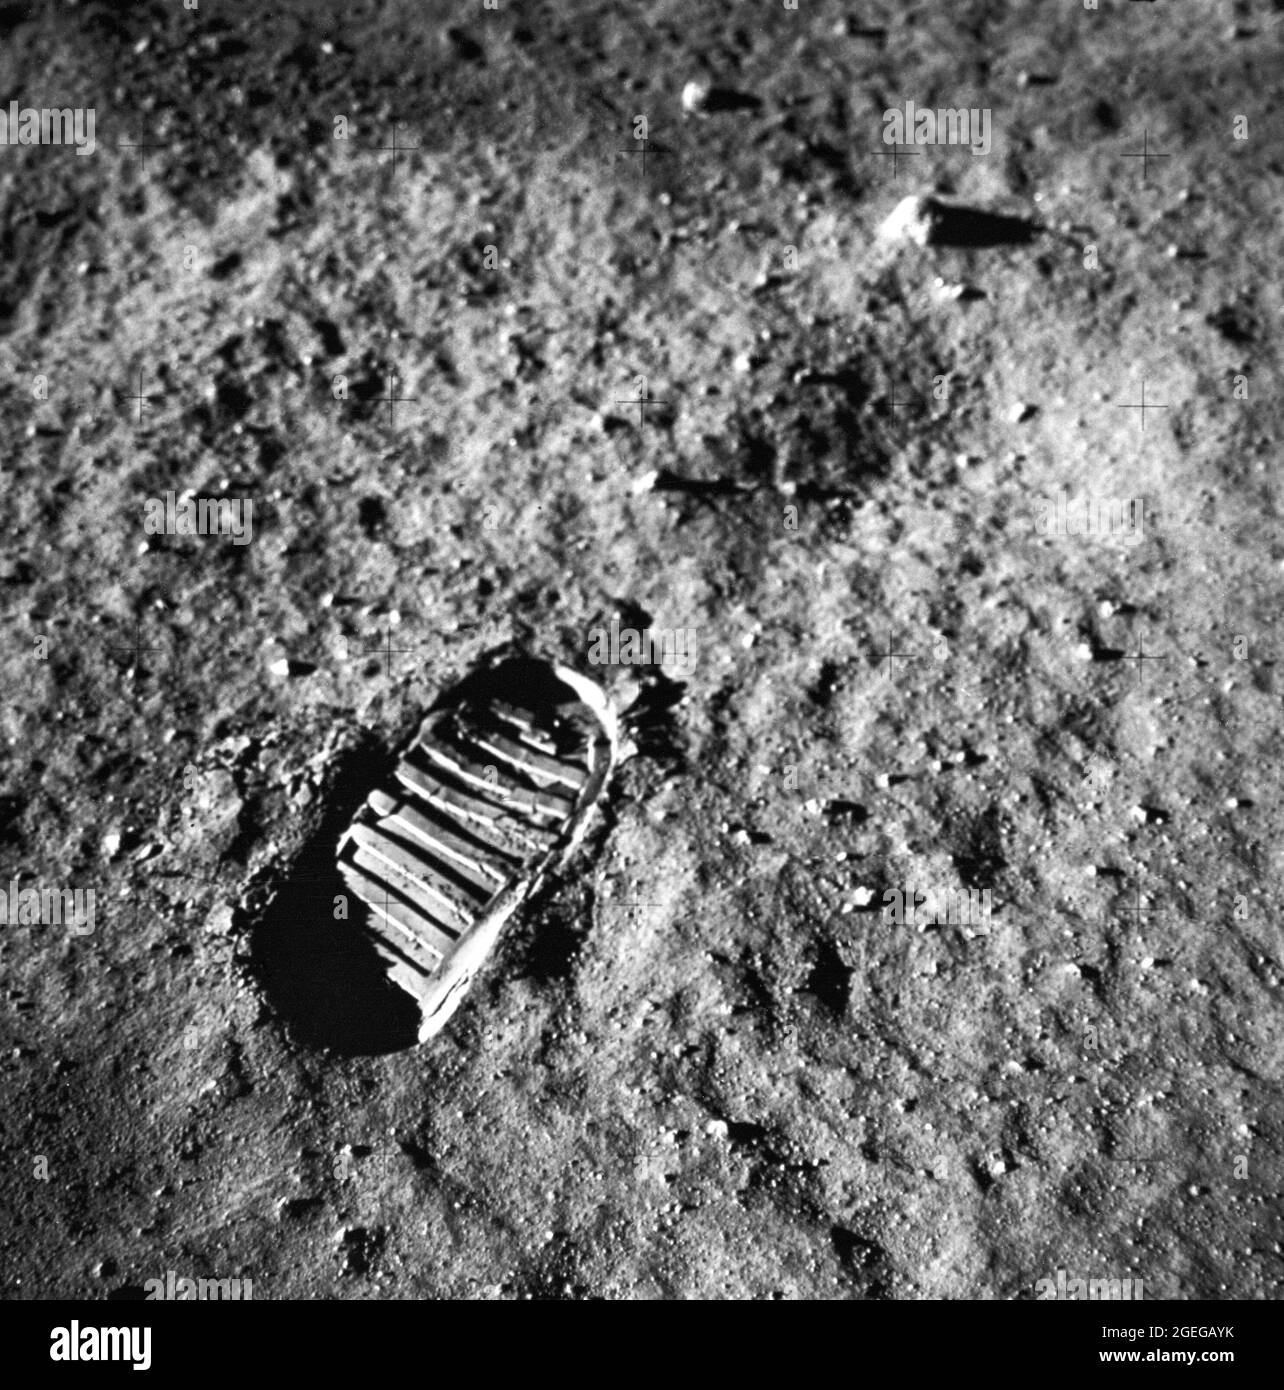 Vue rapprochée de l’empreinte d’un astronaute dans le sol lunaire, photographiée par une caméra de surface lunaire de 70 mm au cours de l’activité extravéhiculaire de surface lunaire Apollo 11. Première mission lunaire habitée, l'Apollo 11 a été lancé à bord d'un véhicule de lancement Saturn V du Kennedy Space Center, en Floride, le 16 juillet 1969, et est revenu sur Terre en toute sécurité le 24 juillet 1969. L'équipage de 3 personnes à bord du vol était composé de Neil A, Armstrong, commandant de mission; Edwin E. Aldrin, Jr., Lunar module Pilot ; et Michael Collins, Command module Pilot. Banque D'Images